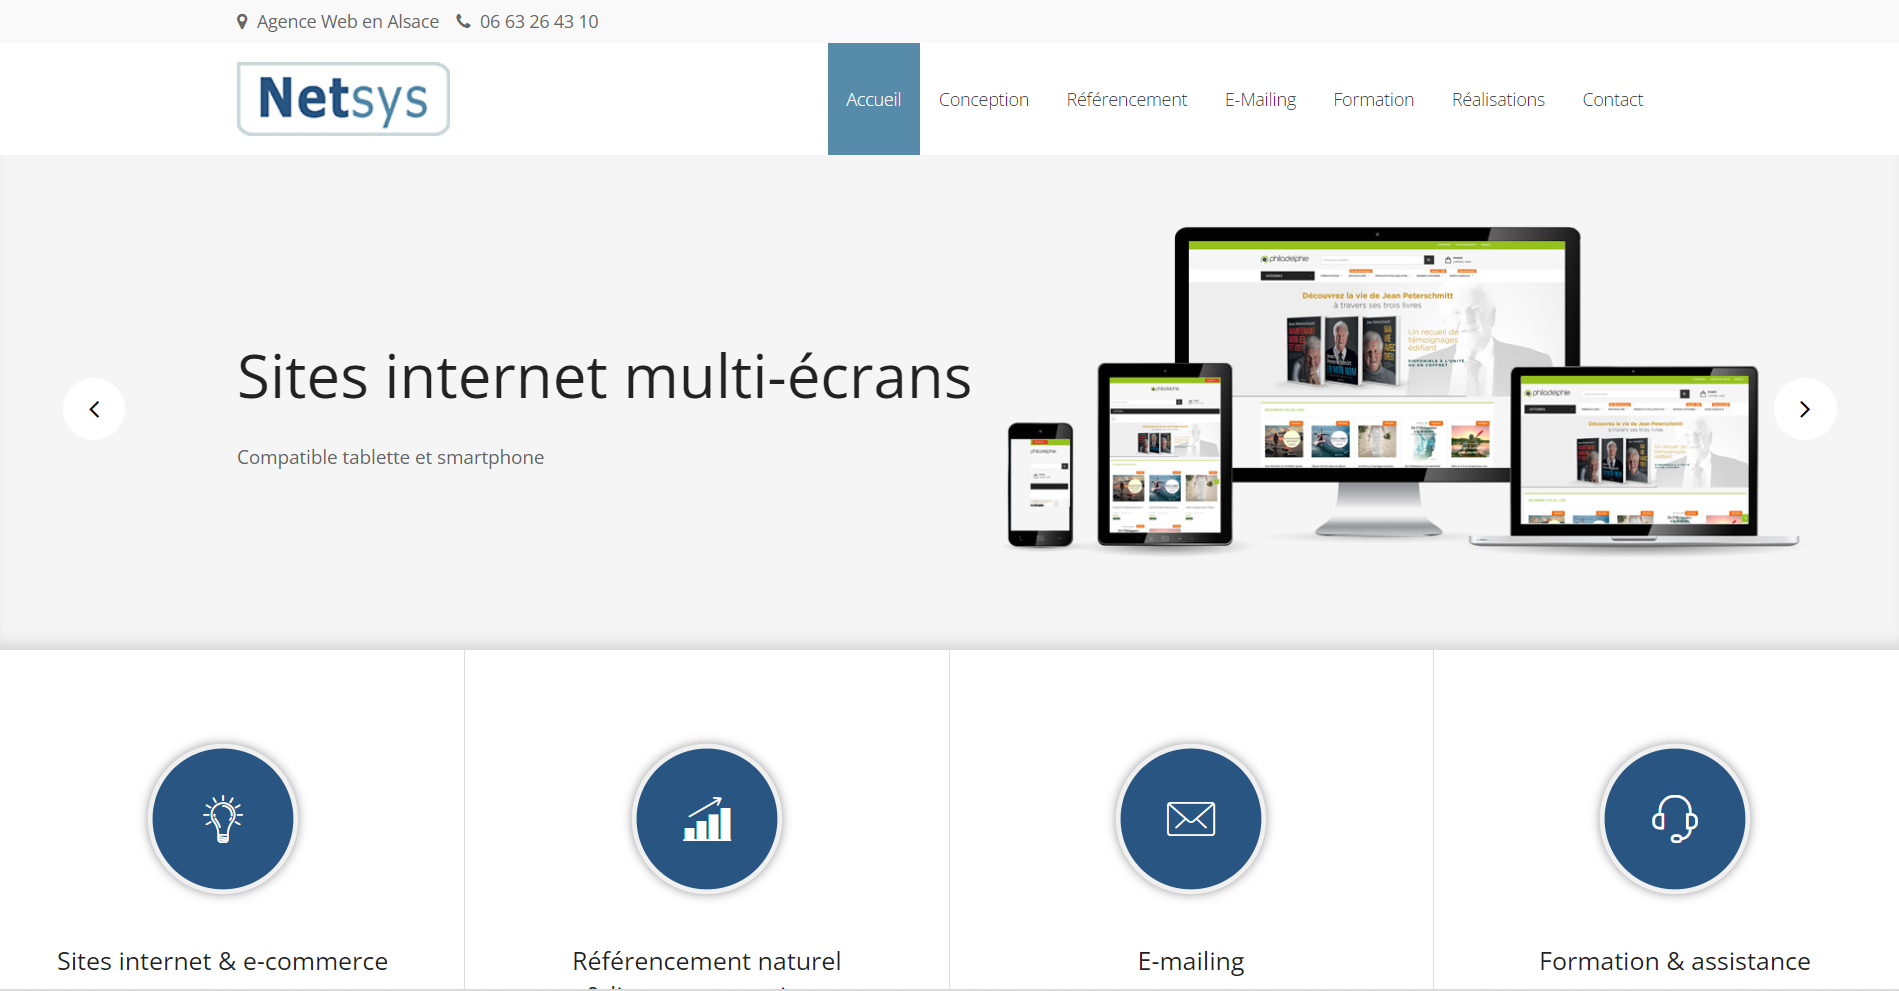  Netsys — Agence Web - Agence Web à Colmar